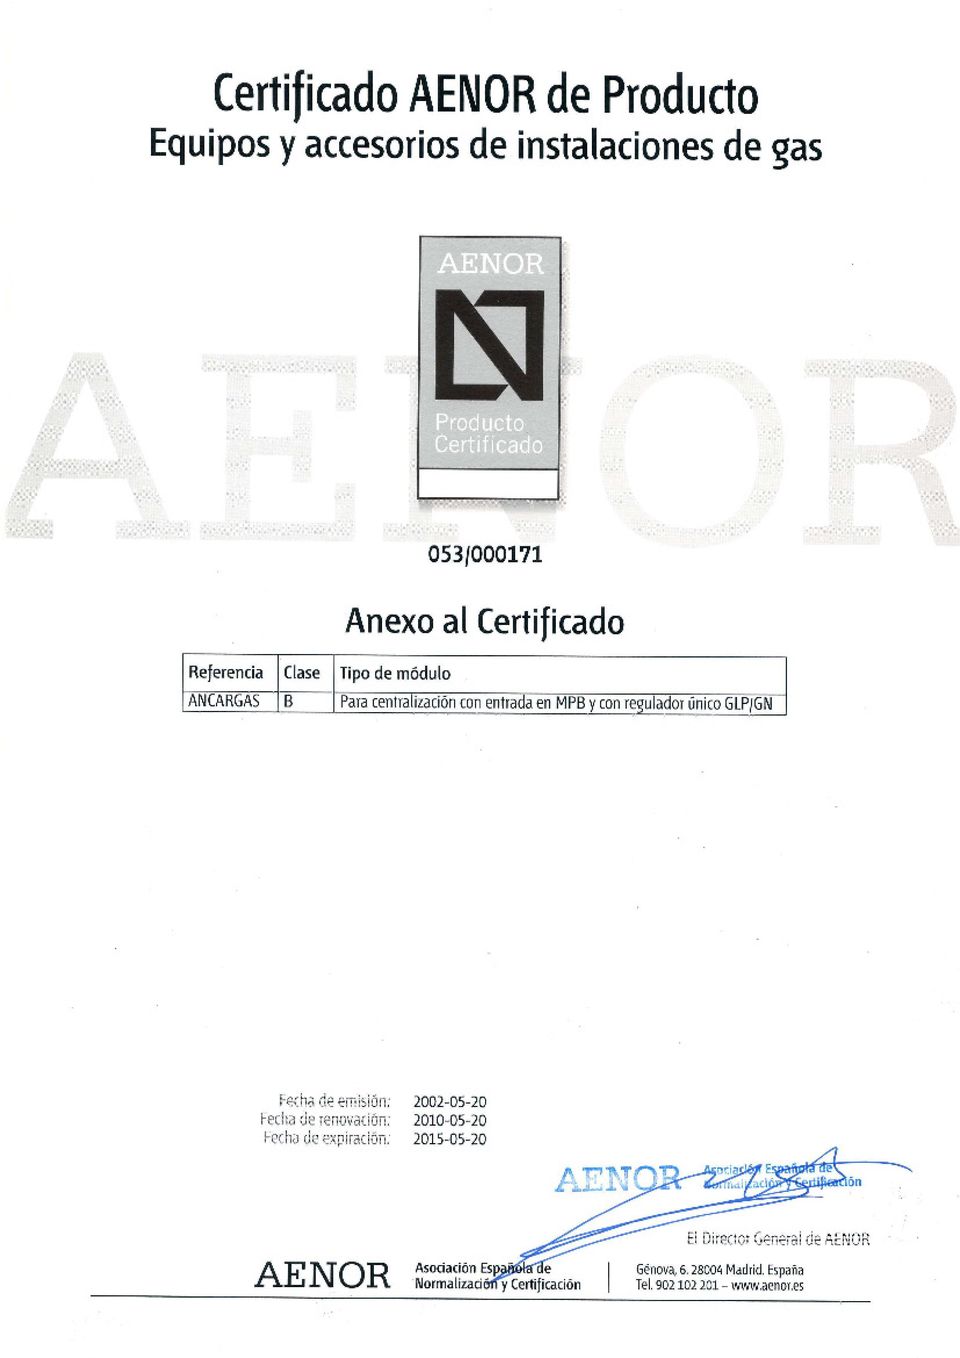 ANCARGASB Anexo al Certificado Hara centrallzacion con entrada MPB y con requlador único GLP/GN Fecha de emisión: